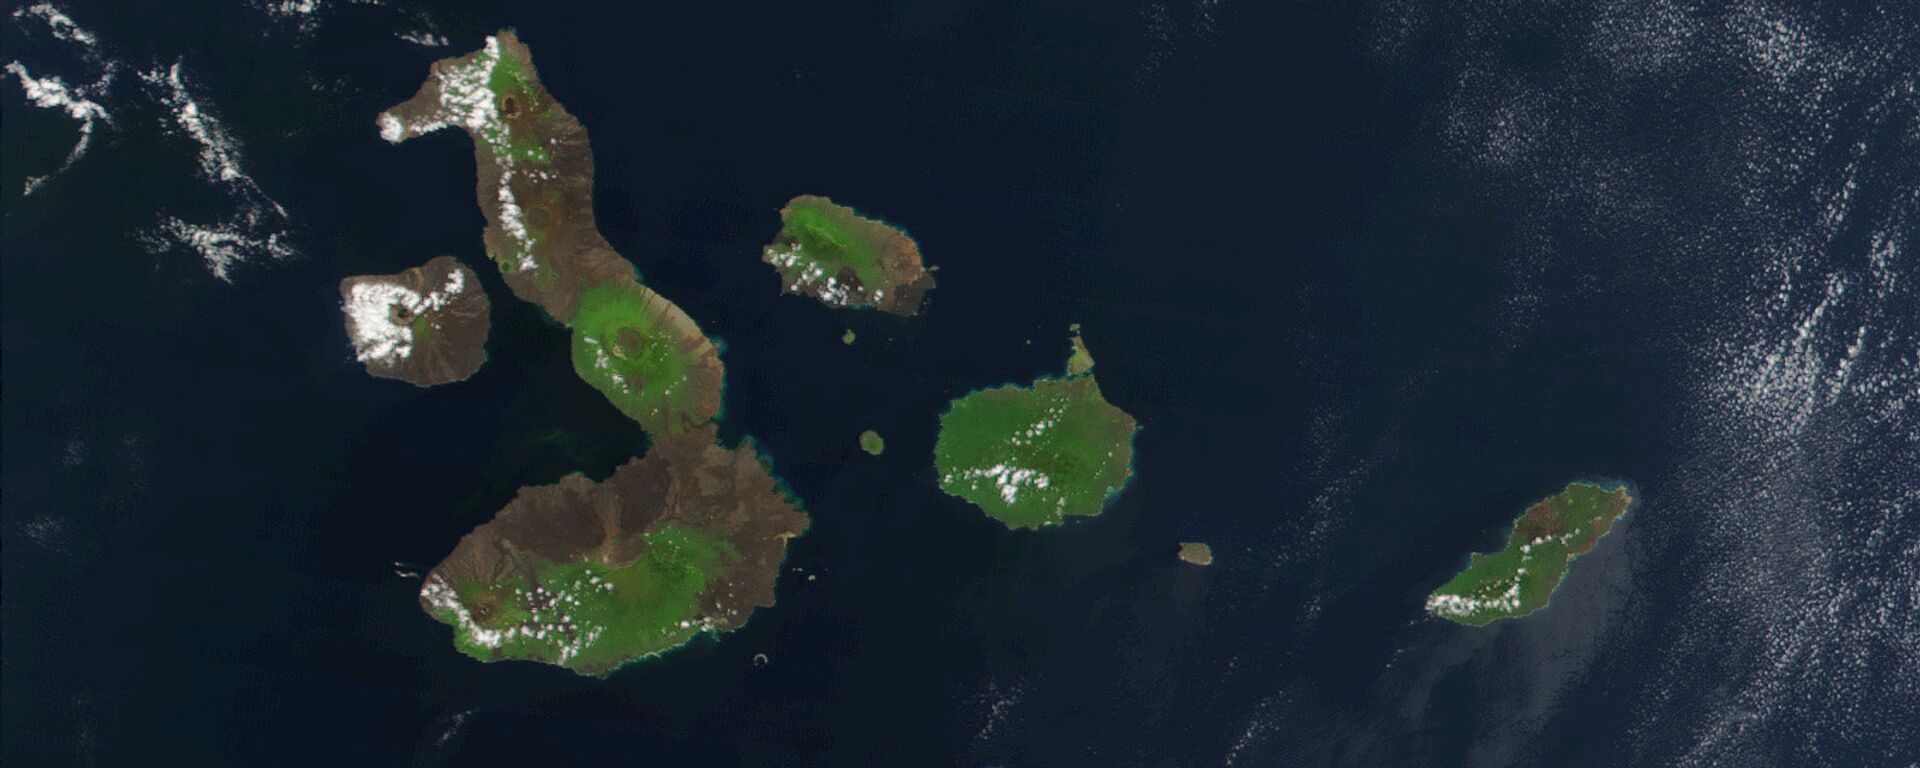 Las Islas Galápagos - Sputnik Mundo, 1920, 05.07.2021